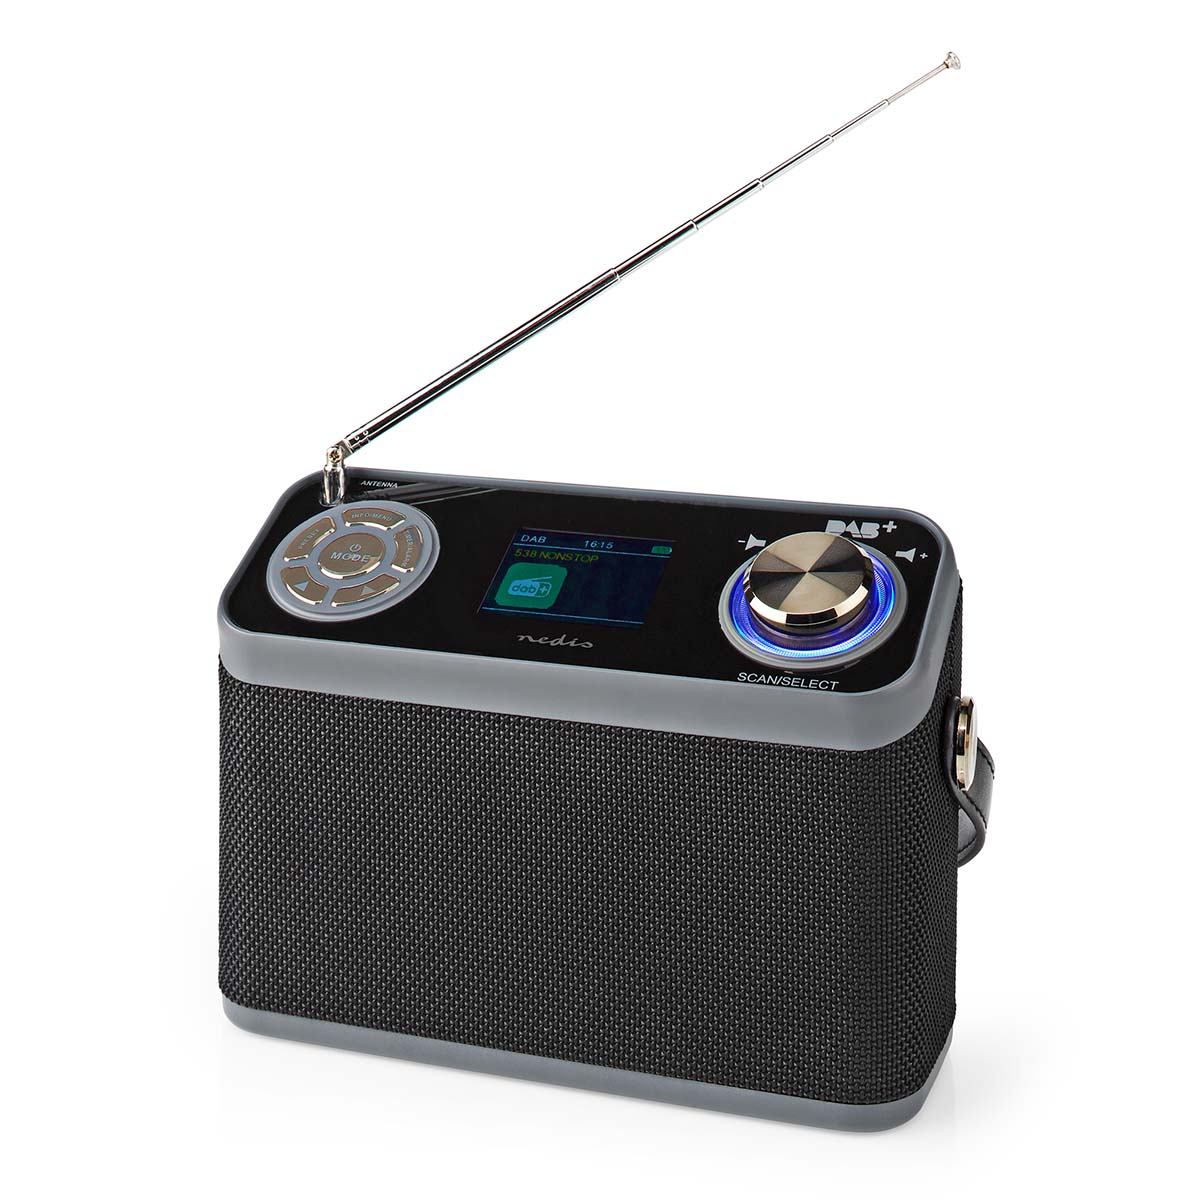 Nedis RDDB5200BK radiopřijímač DAB+ / FM, 24W, budík, Bluetooth, 40 předvoleb